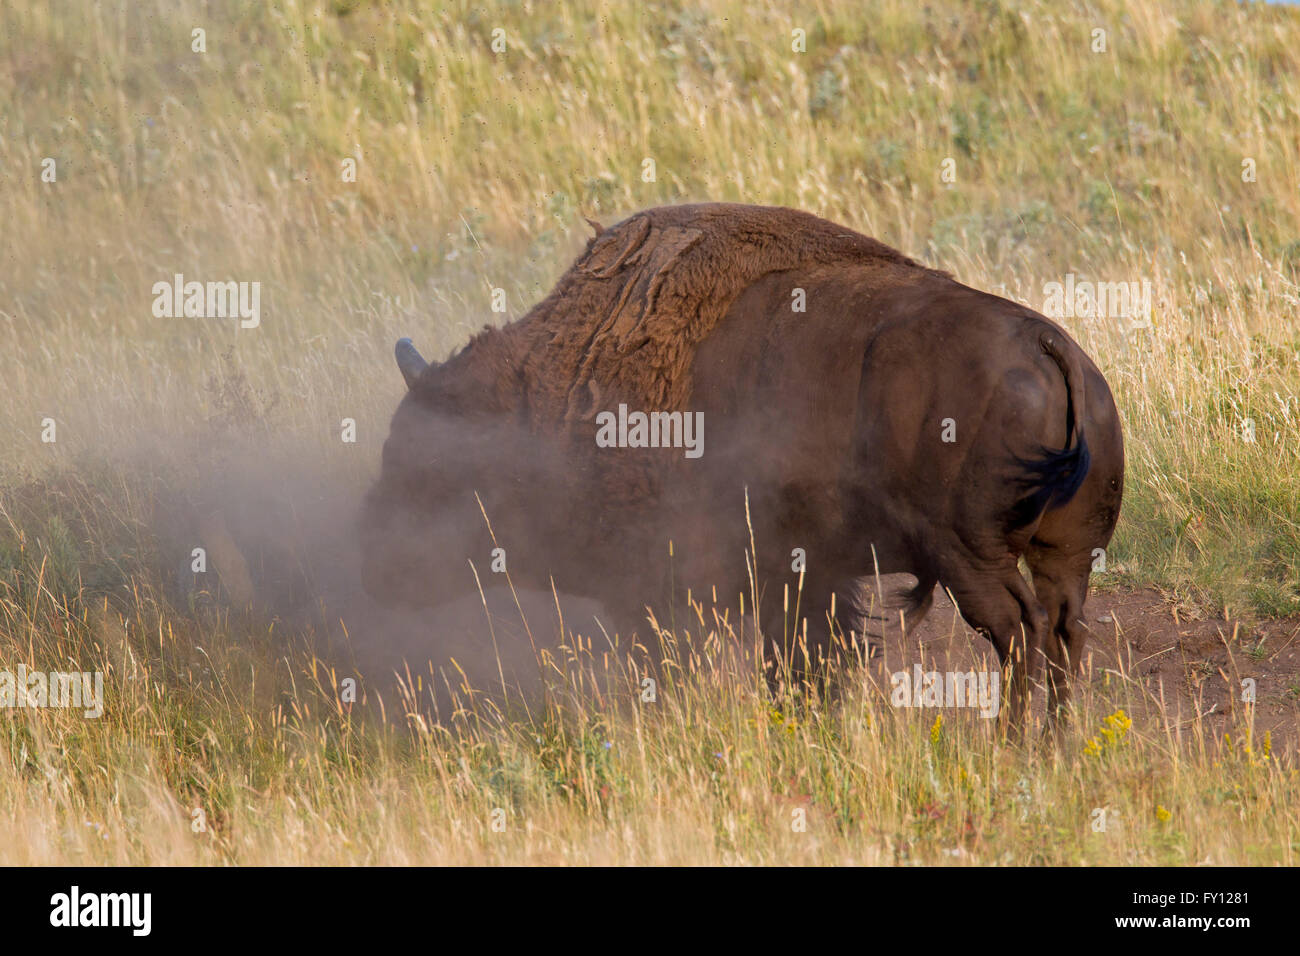 Bison d'Amérique / American bison (Bison bison) bull prenant une sandbath, Waterton Lakes National Park, Alberta, Canada Banque D'Images